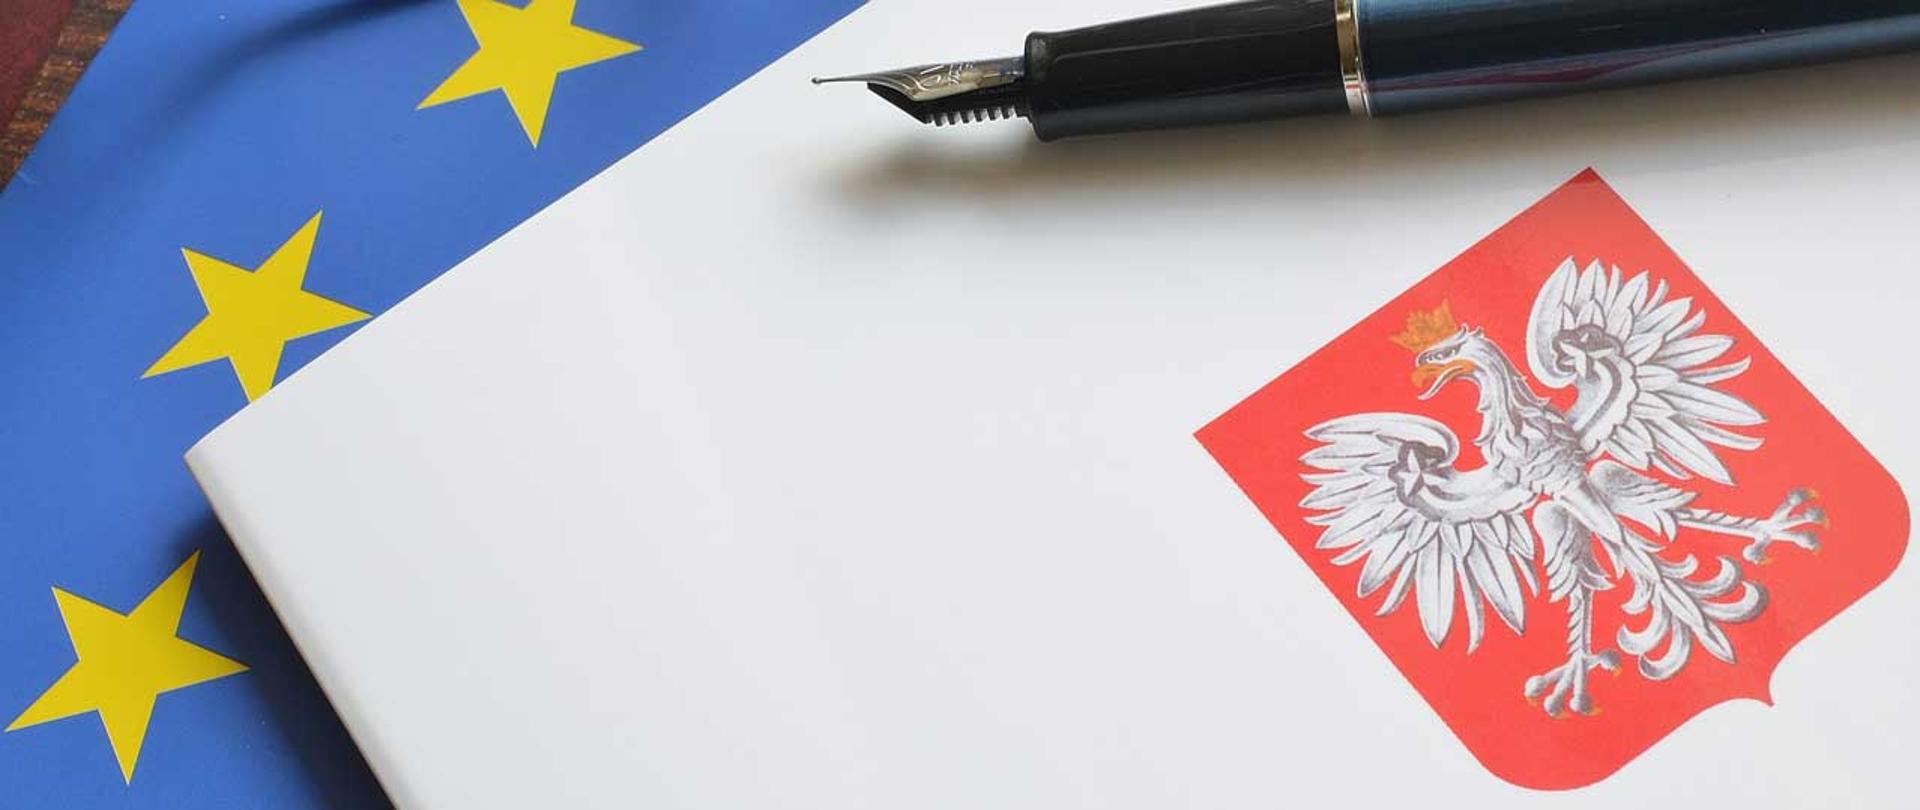 Dokument polski z orłem na okładce i otwartym piórem, na tle flagi unii europejskiej 